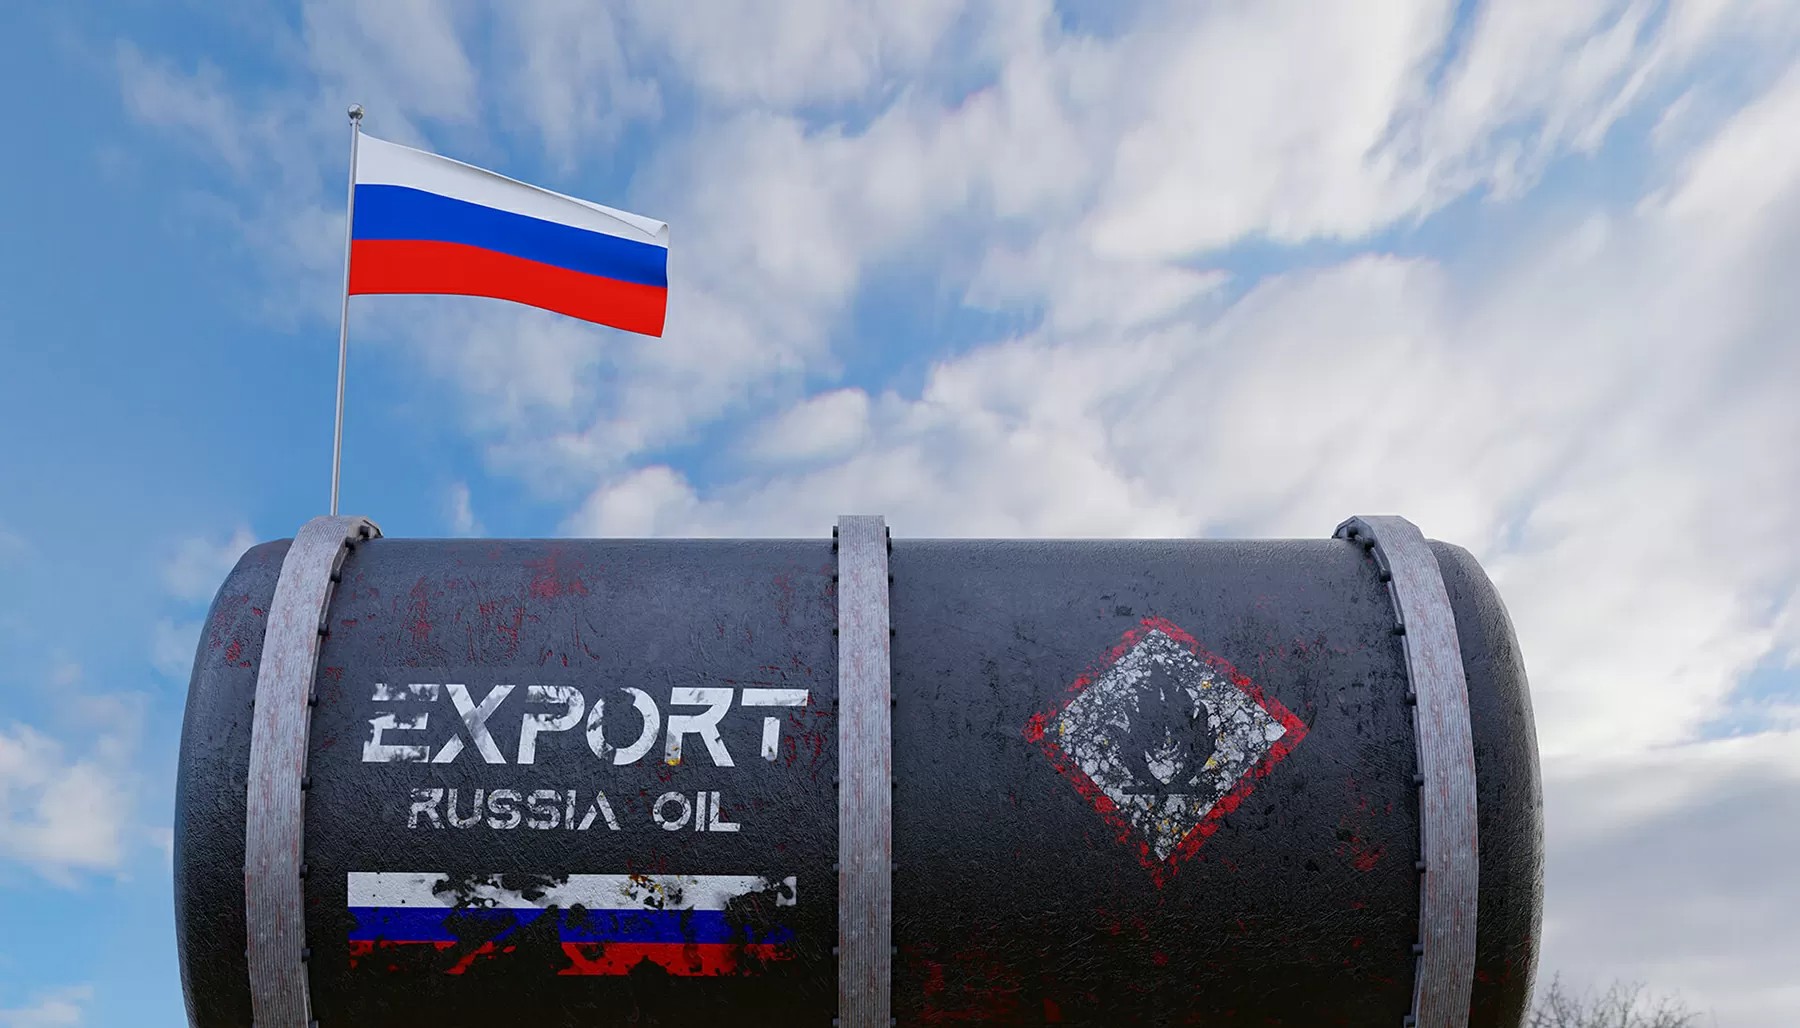 Θα επιβάλει τελικά η Ευρωπαϊκή Ένωση πλήρες εμπάργκο στο ρωσικό πετρέλαιο;